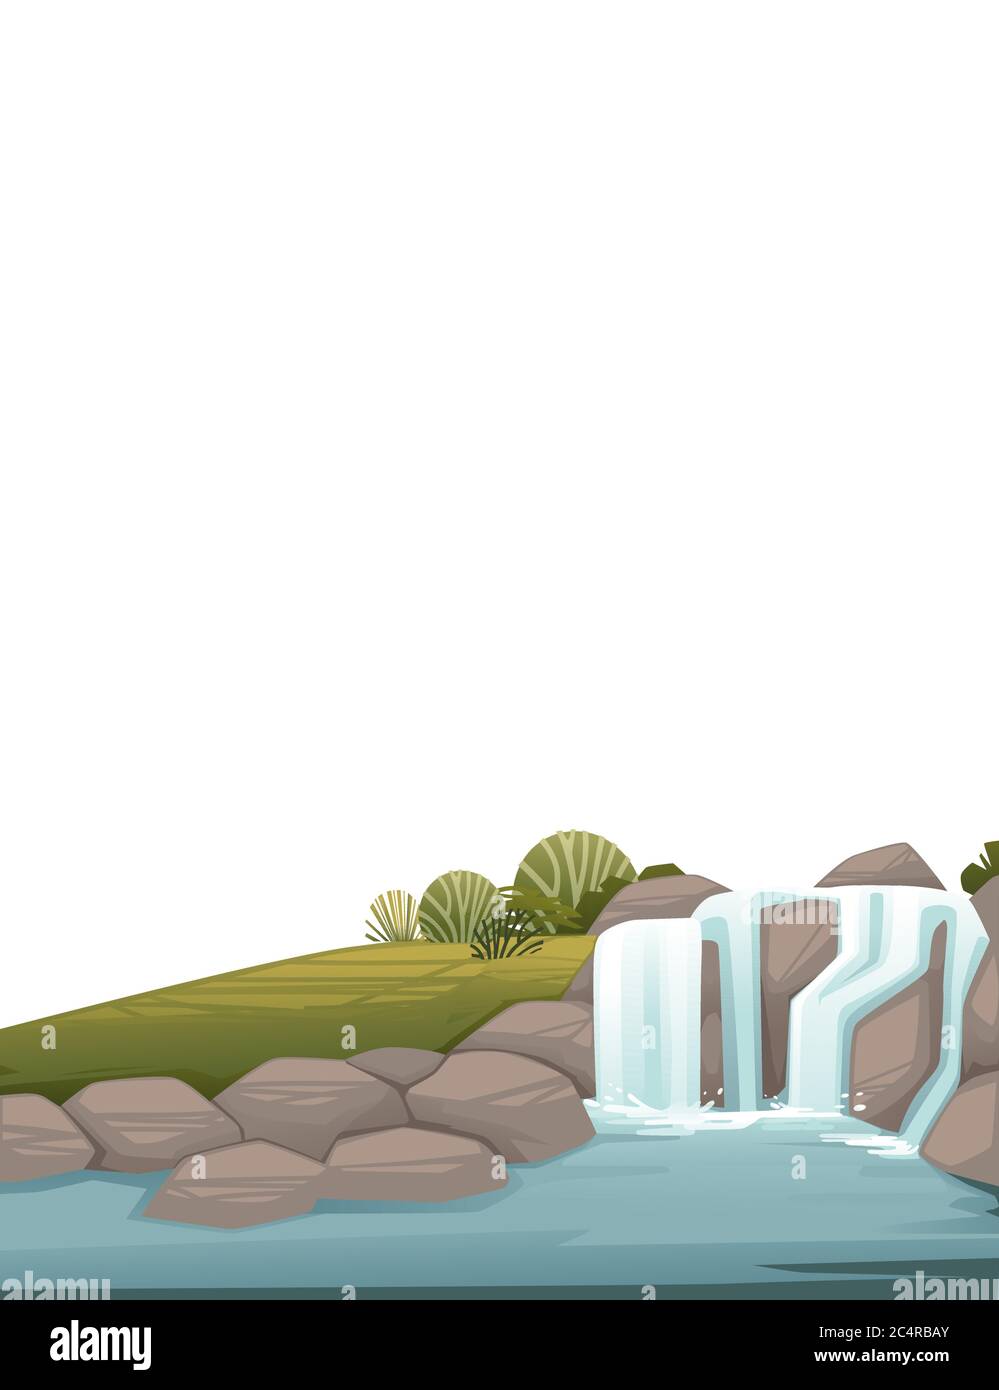 Paysage de campagne cascade sur rochers dessin animé dessin vectoriel plat illustration sur fond blanc conception verticale Illustration de Vecteur